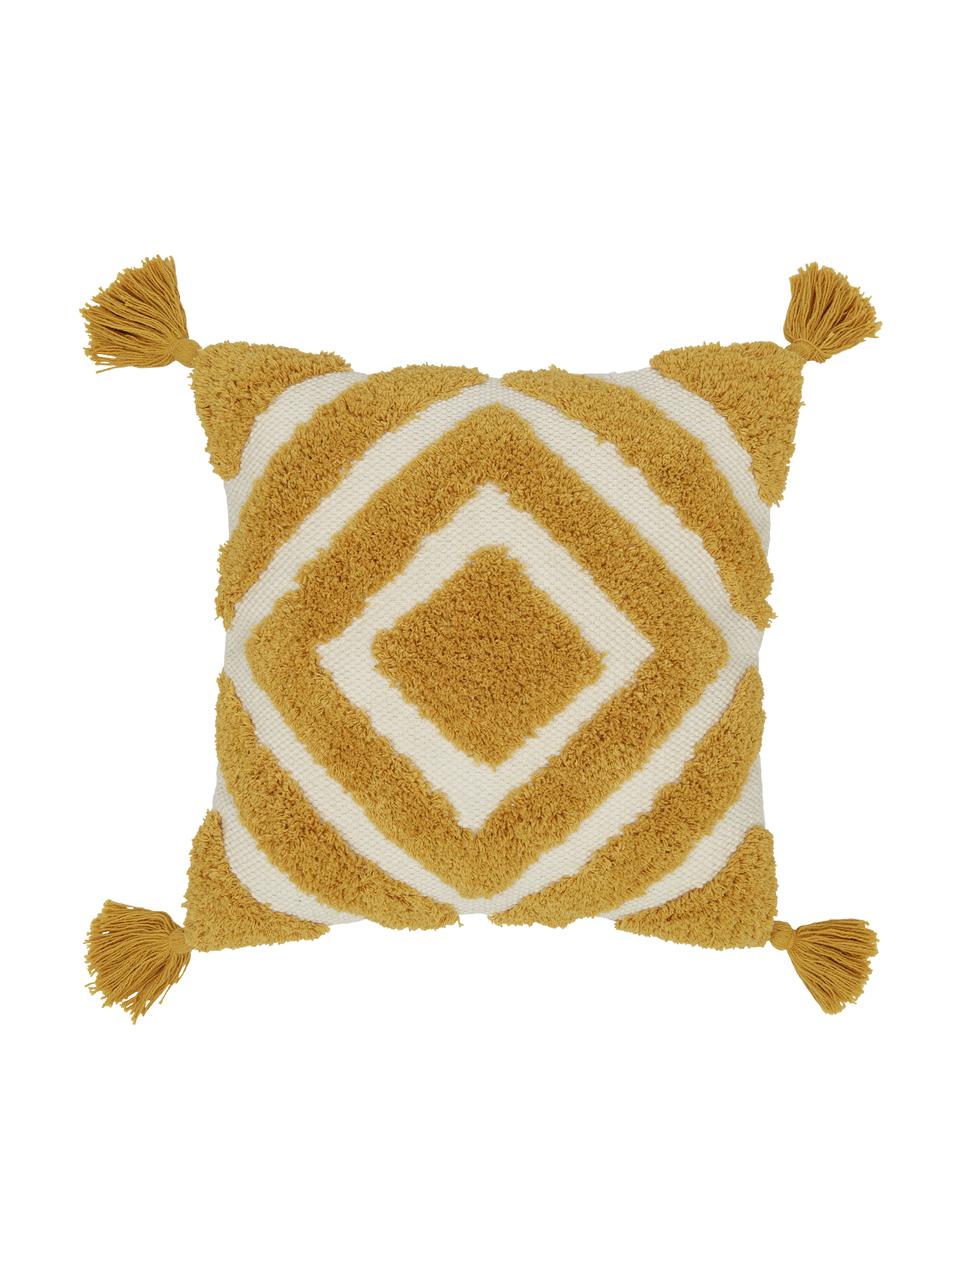 Poszewka na poduszkę Karina, 100% bawełna, Biały, beżowy, żółty, S 45 x D 45 cm